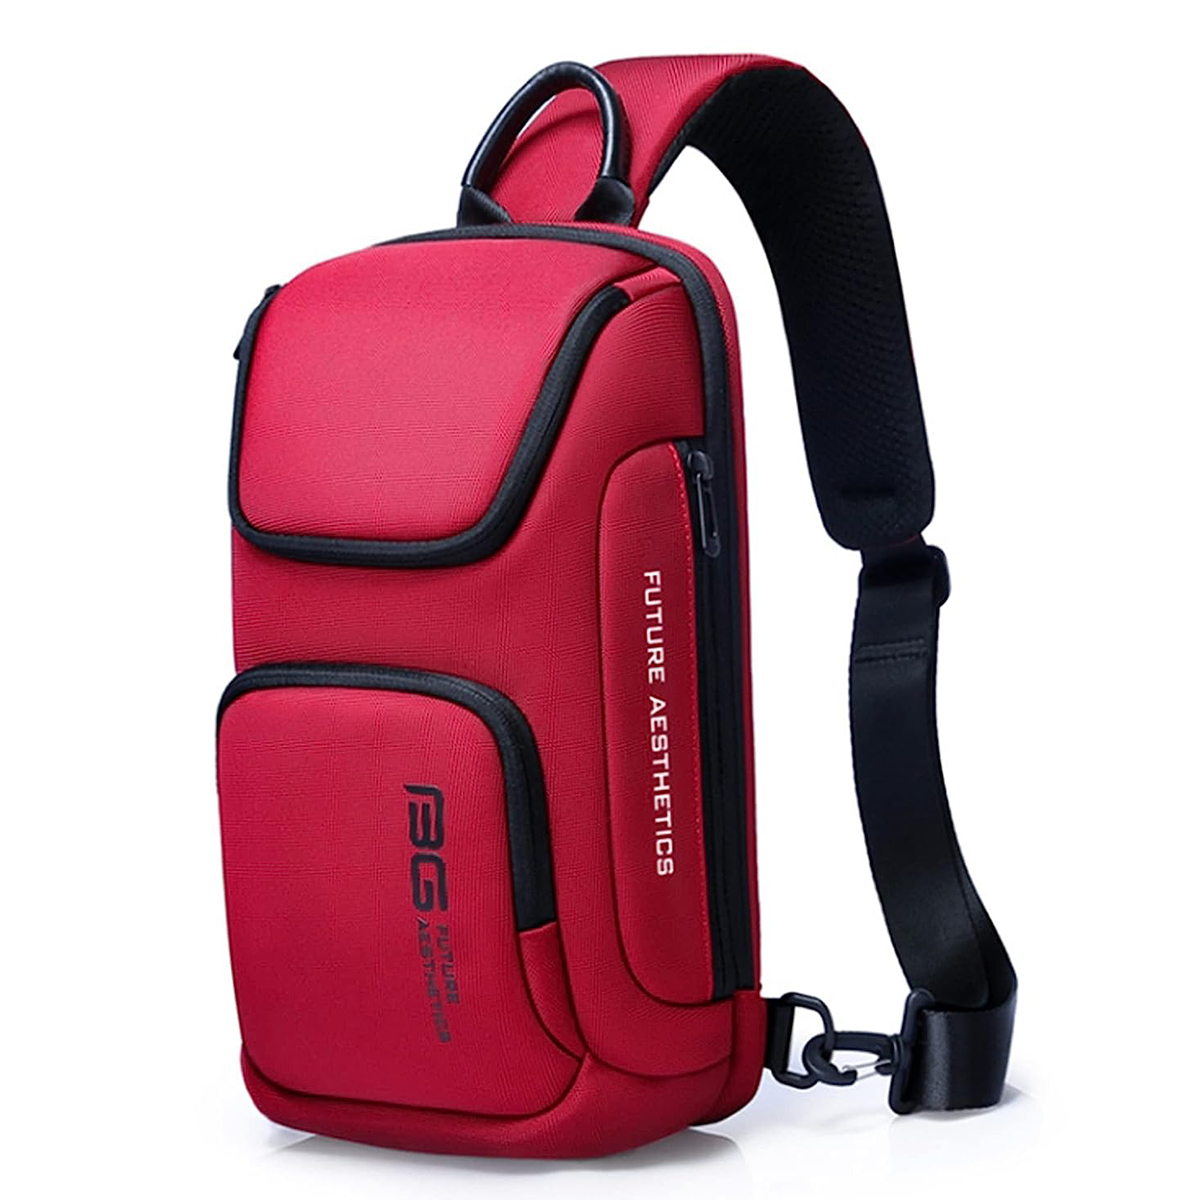 Red Lemon BANGE Sling Bag Crossbody Shoulder Messenger Waterproof Short Trip Chest Bag